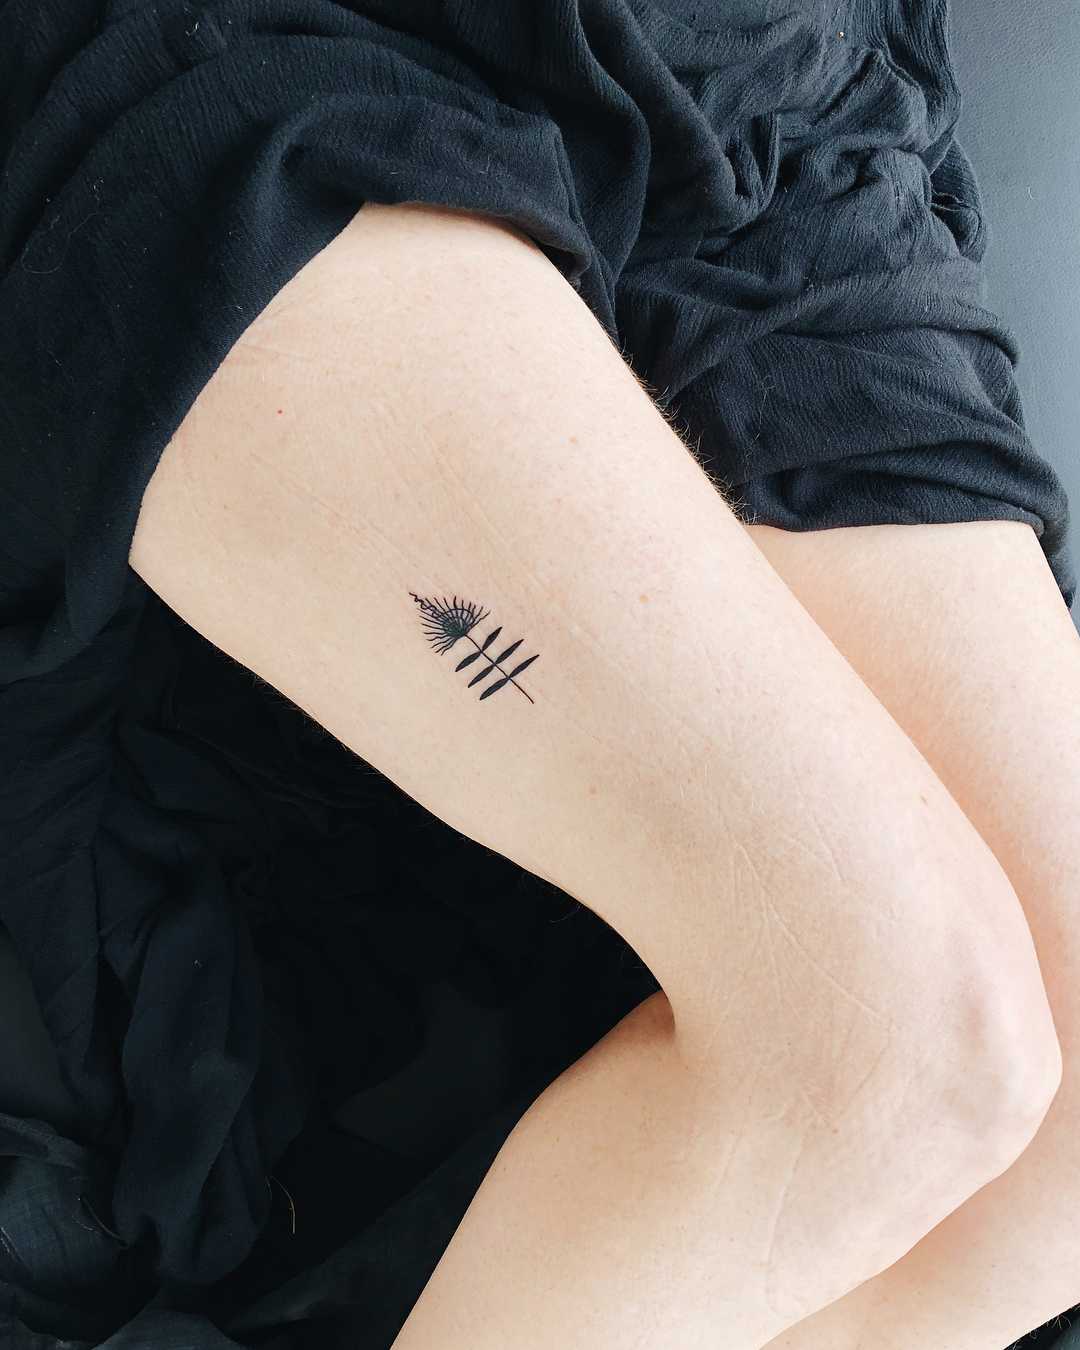 Tiny talisman tattoo on the thigh